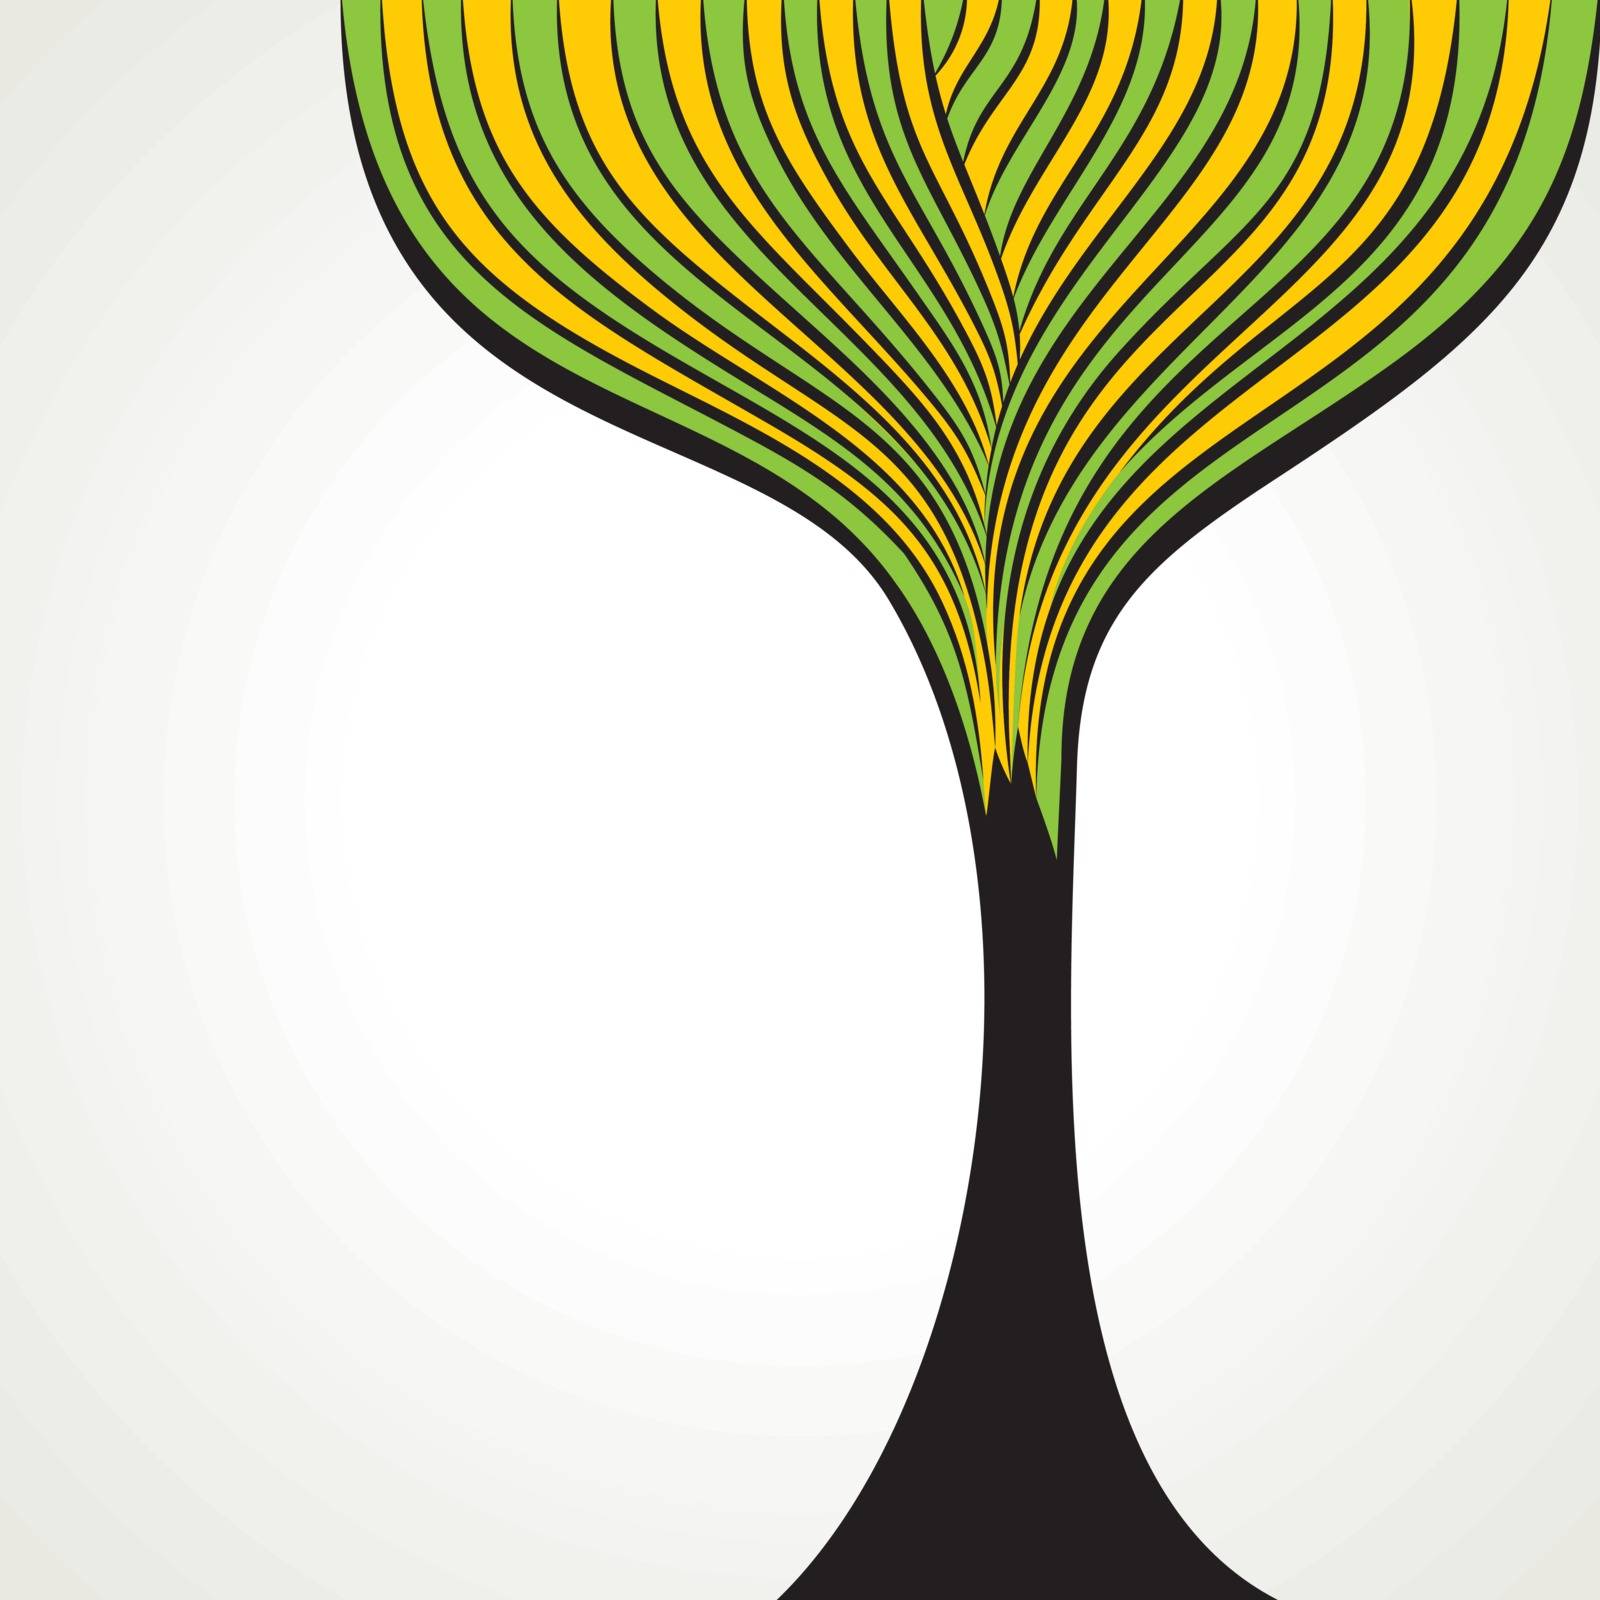 abstract tree design stock vector by designaart